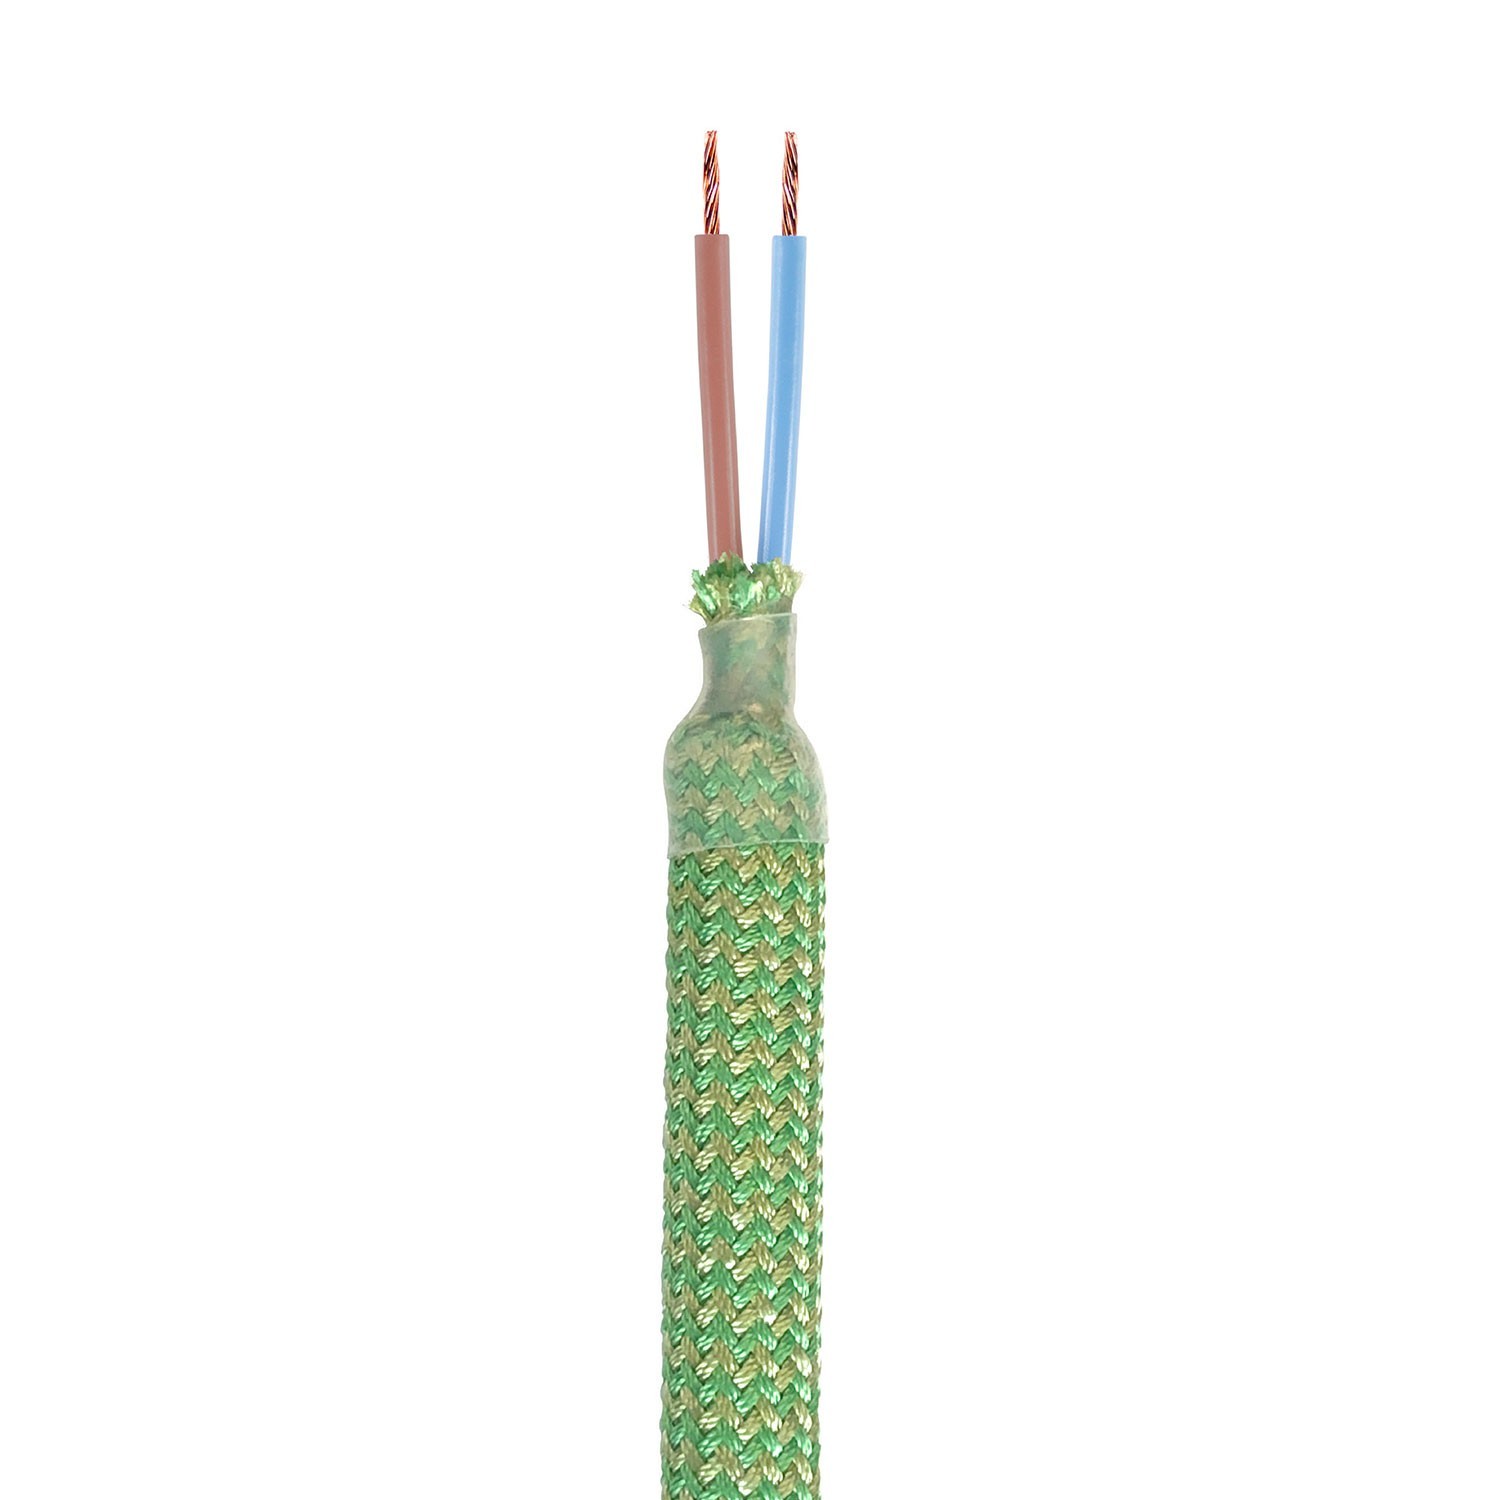 Creative Flex készlet rugalmas csővel, fűzöld RM77 szövet borítással, fém csatlakozókkal